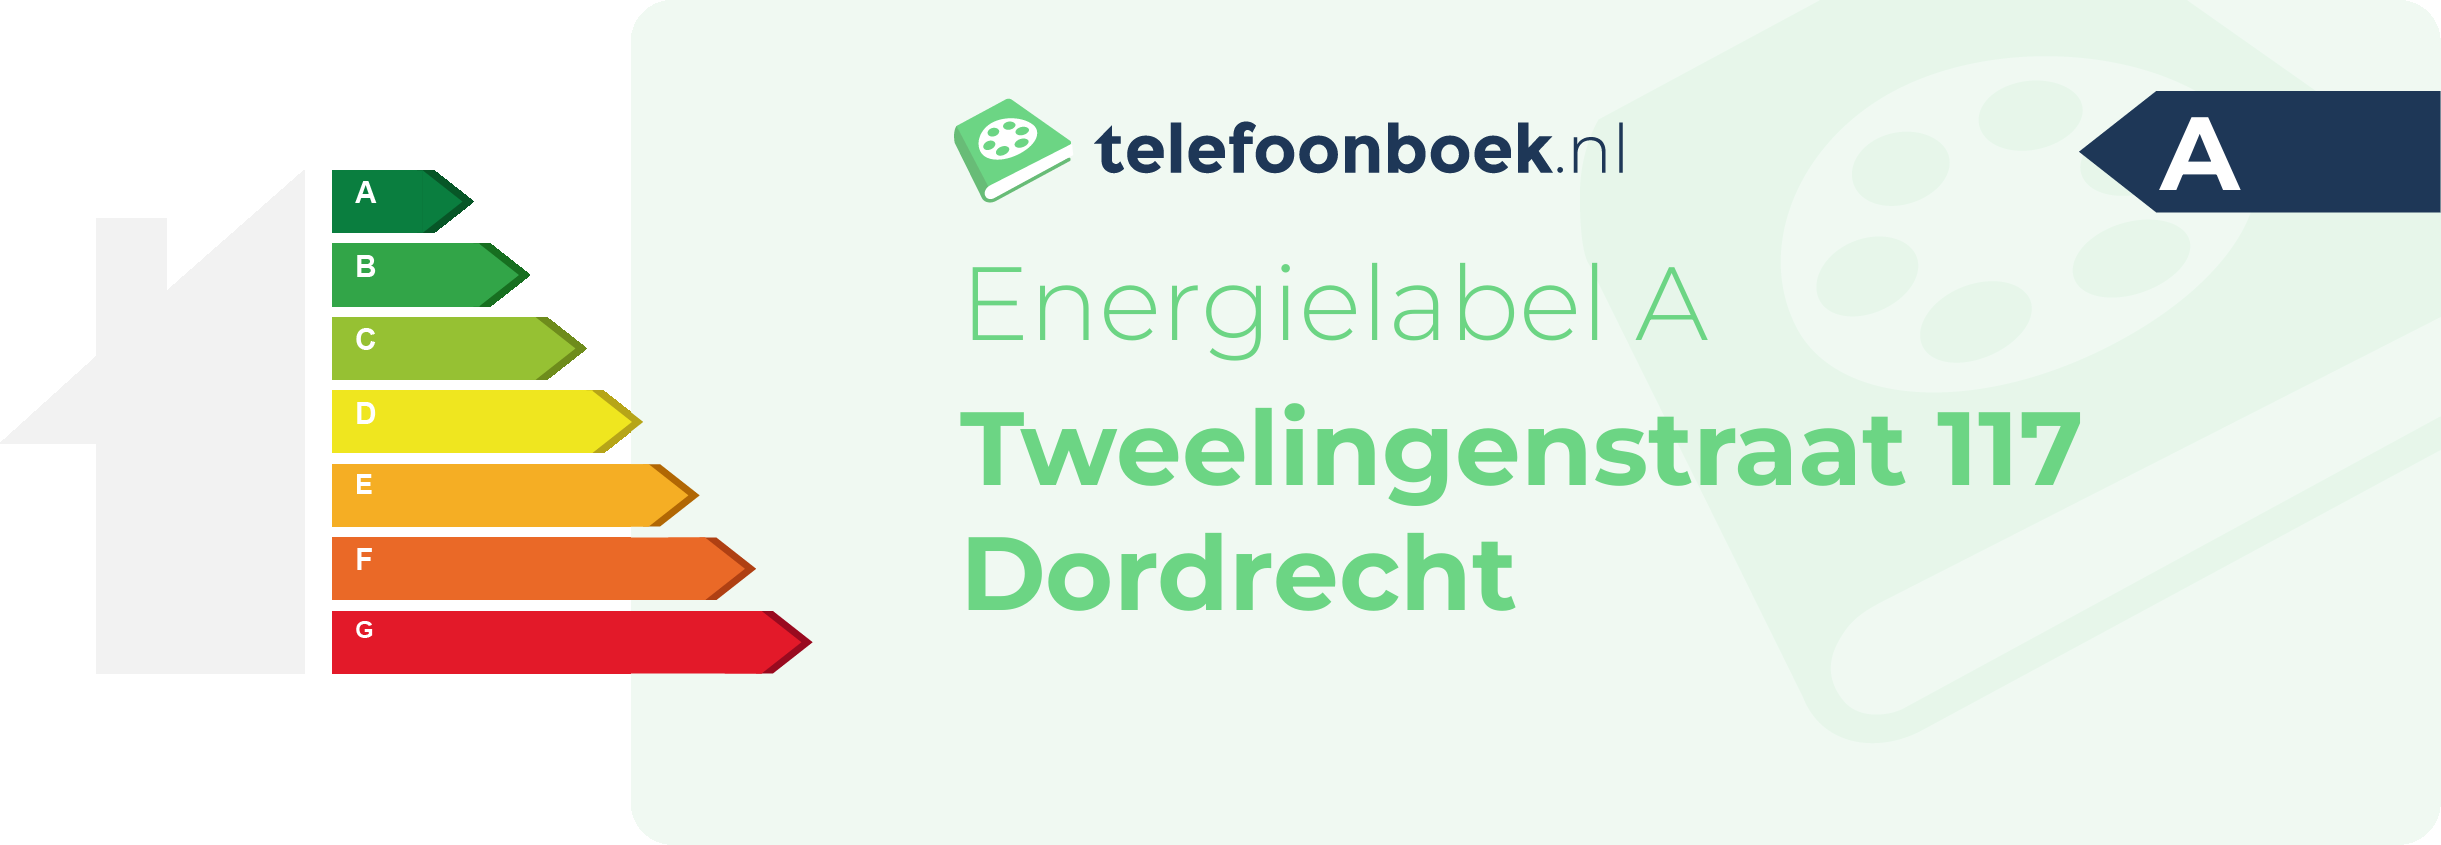 Energielabel Tweelingenstraat 117 Dordrecht